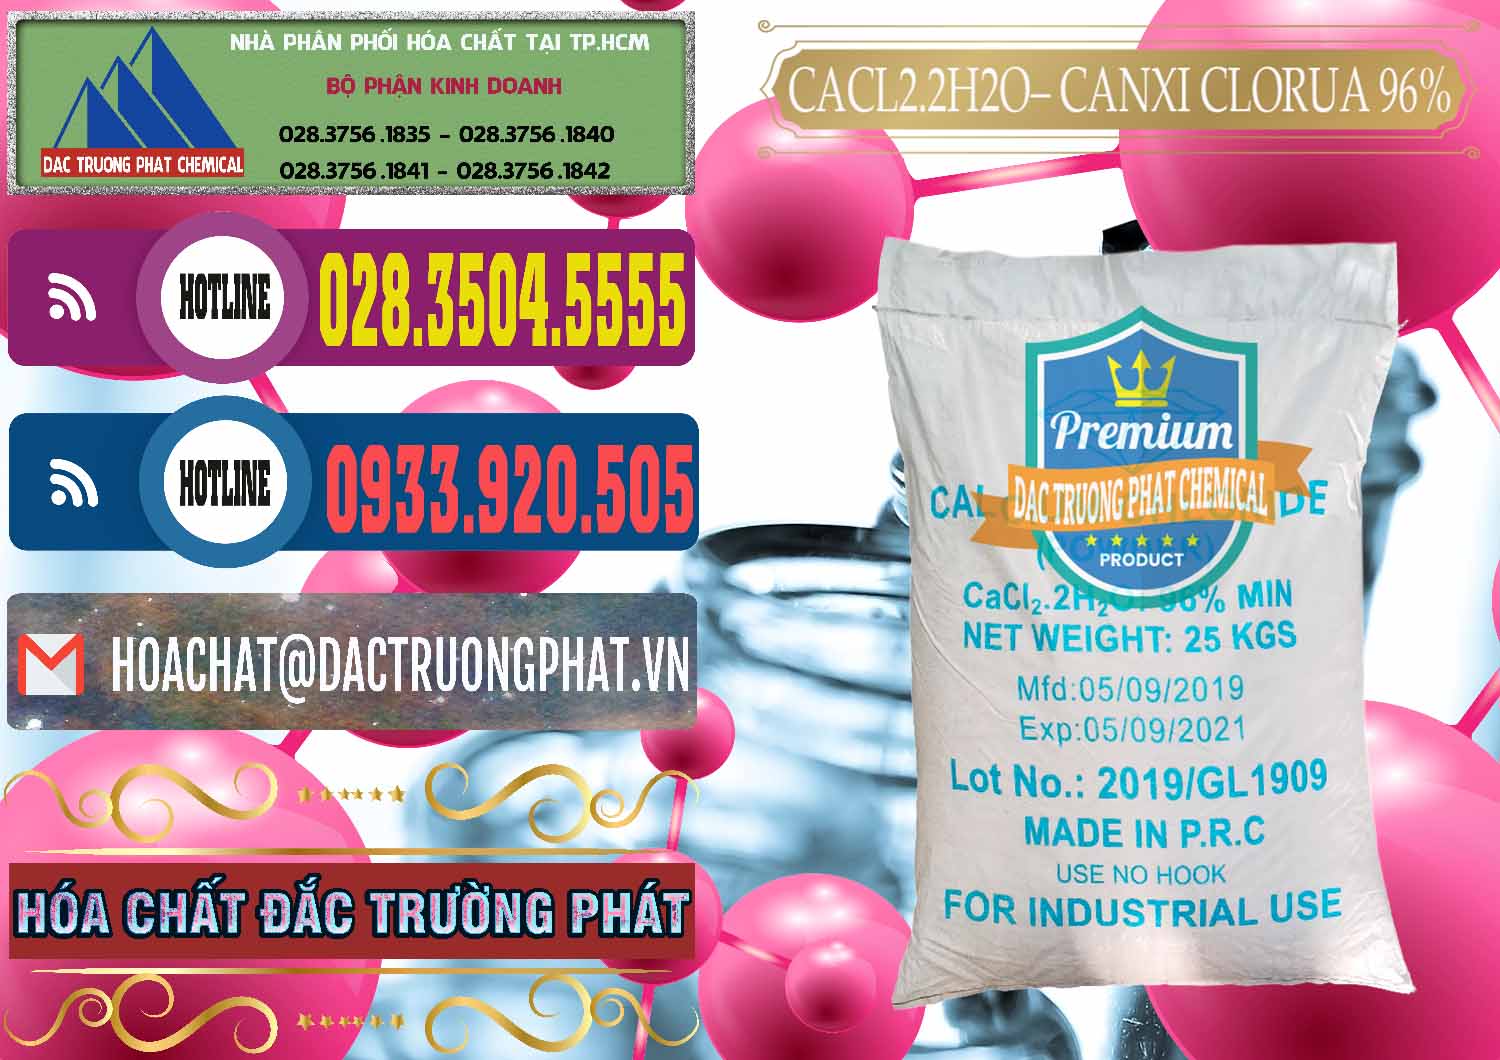 Nơi chuyên bán ( cung cấp ) CaCl2 – Canxi Clorua 96% Logo Kim Cương Trung Quốc China - 0040 - Cty cung cấp - bán hóa chất tại TP.HCM - muabanhoachat.com.vn